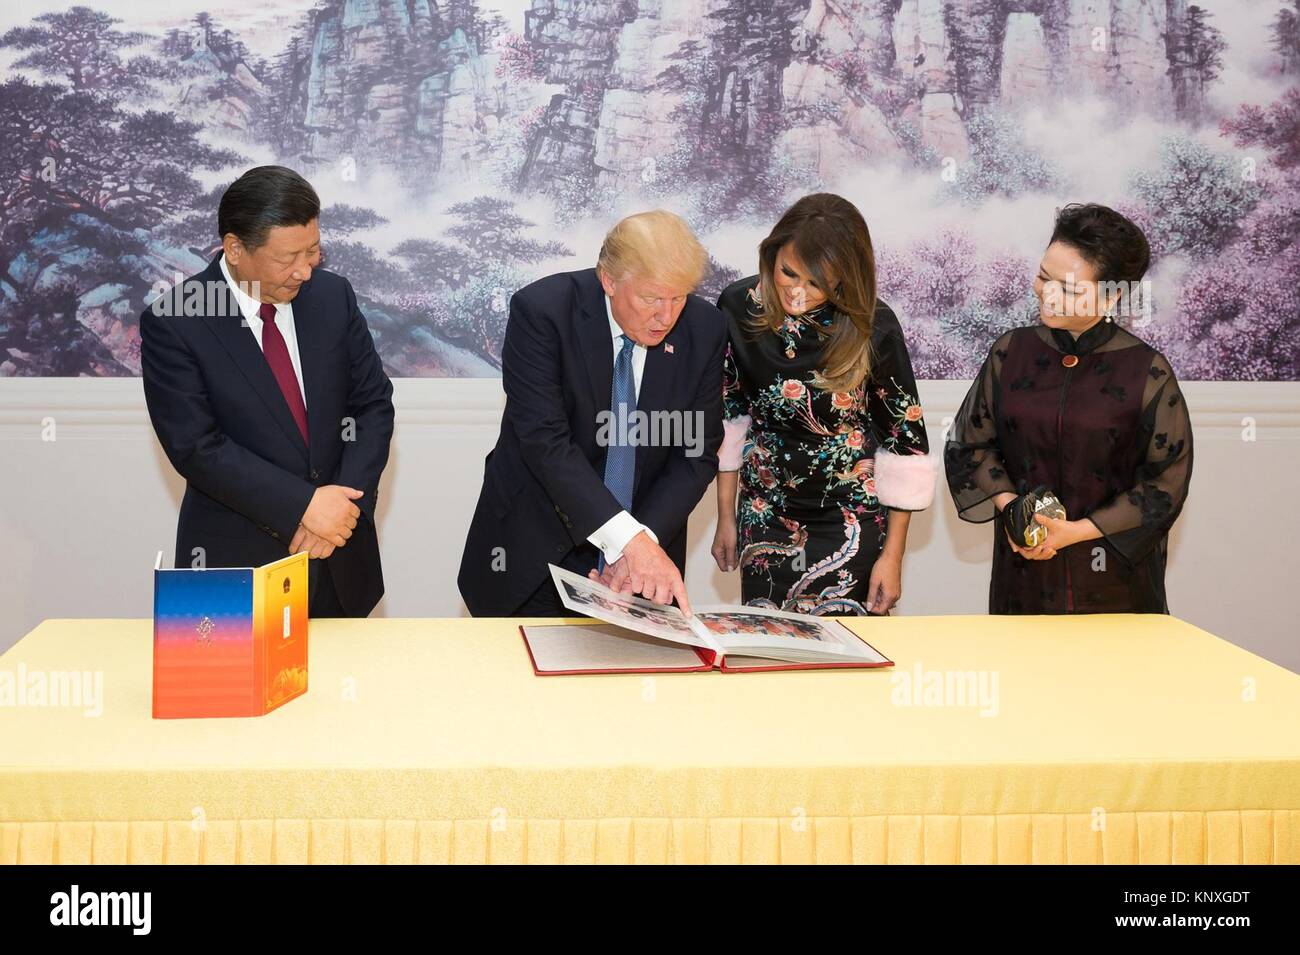 U.S presidente Donald Trump e la first lady Melania Trump guardare attraverso un album di foto della loro visita regalato loro dal Presidente cinese Xi Jinping e sua moglie Peng Liyuan durante la cena di Stato presso la Grande Sala del Popolo Novembre 9, 2017, a Pechino, in Cina. Foto Stock